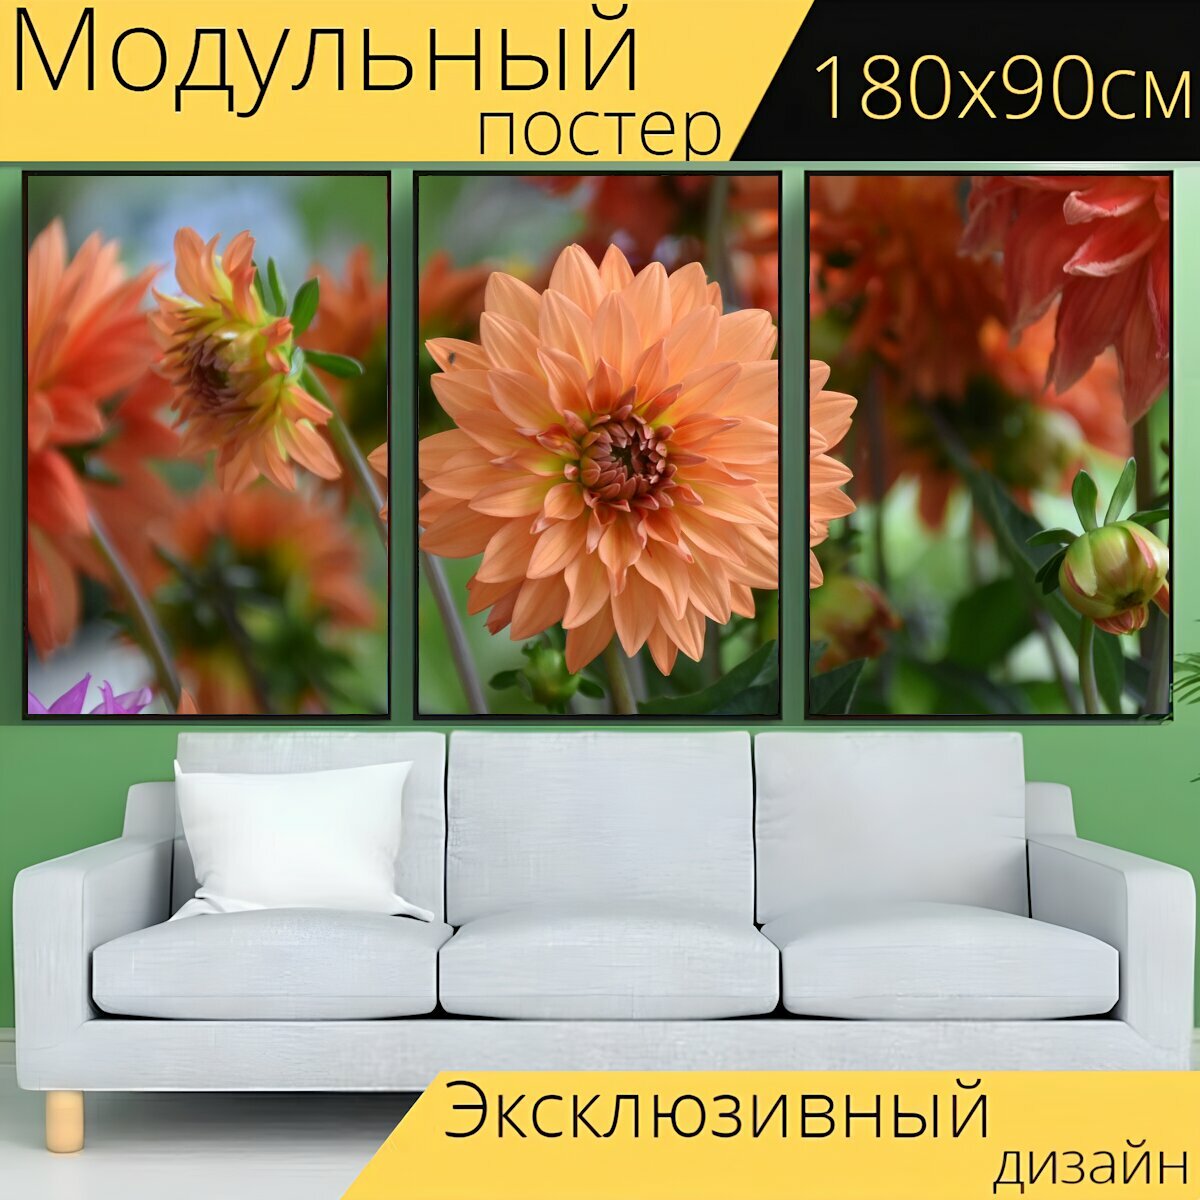 Модульный постер "Цветок, цветок цвет оранжевый, зеленые листья" 180 x 90 см. для интерьера